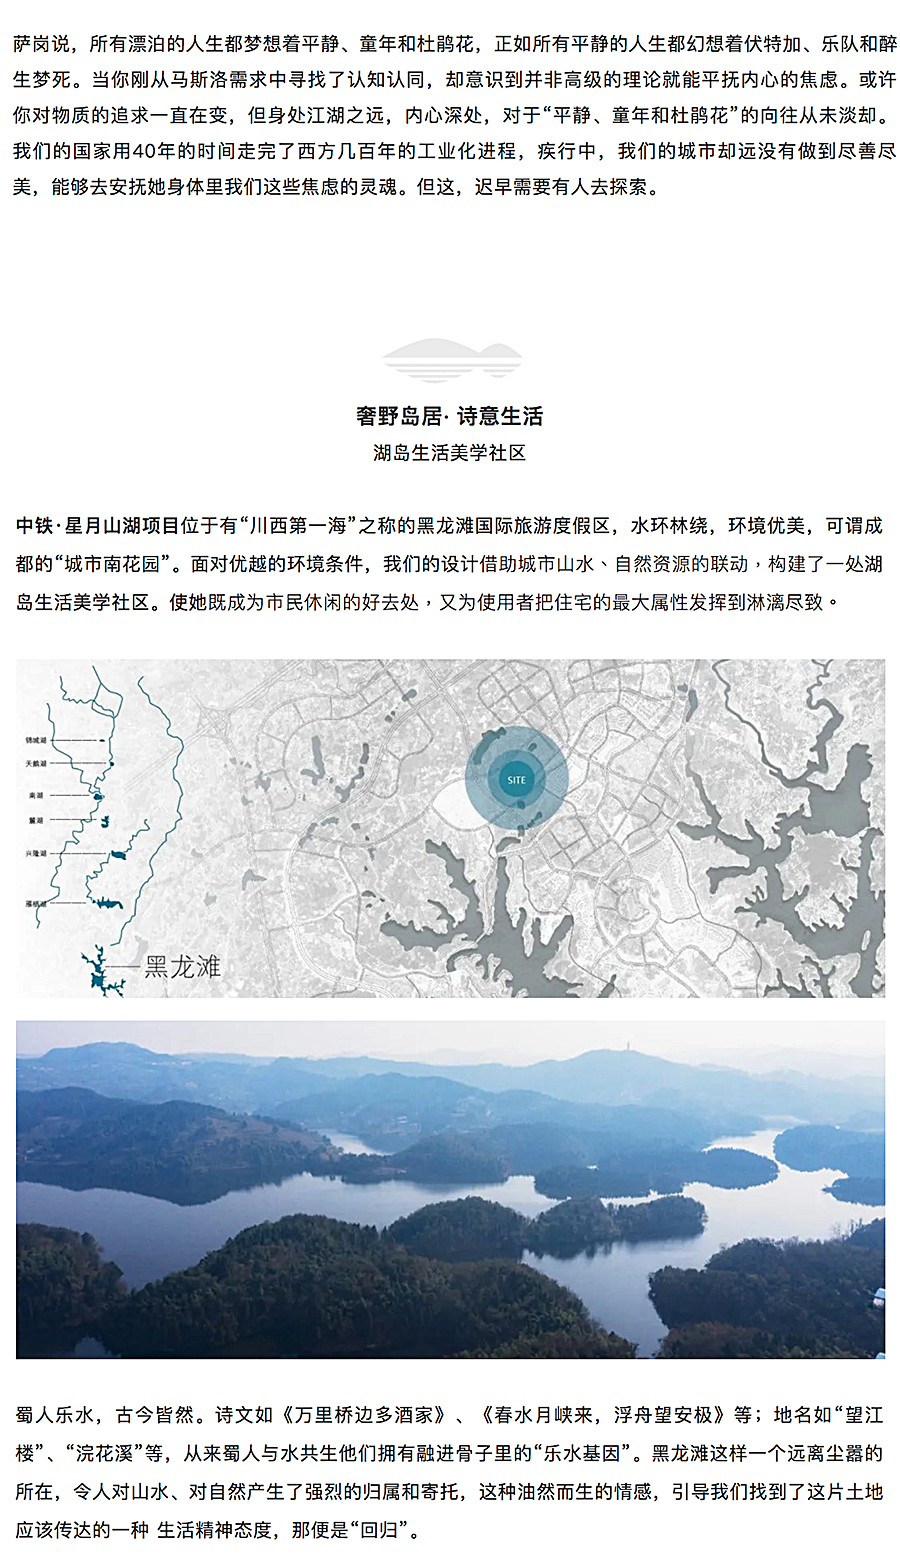 奢野岛居·诗意生活——中铁星月山湖_0002_图层-3.jpg